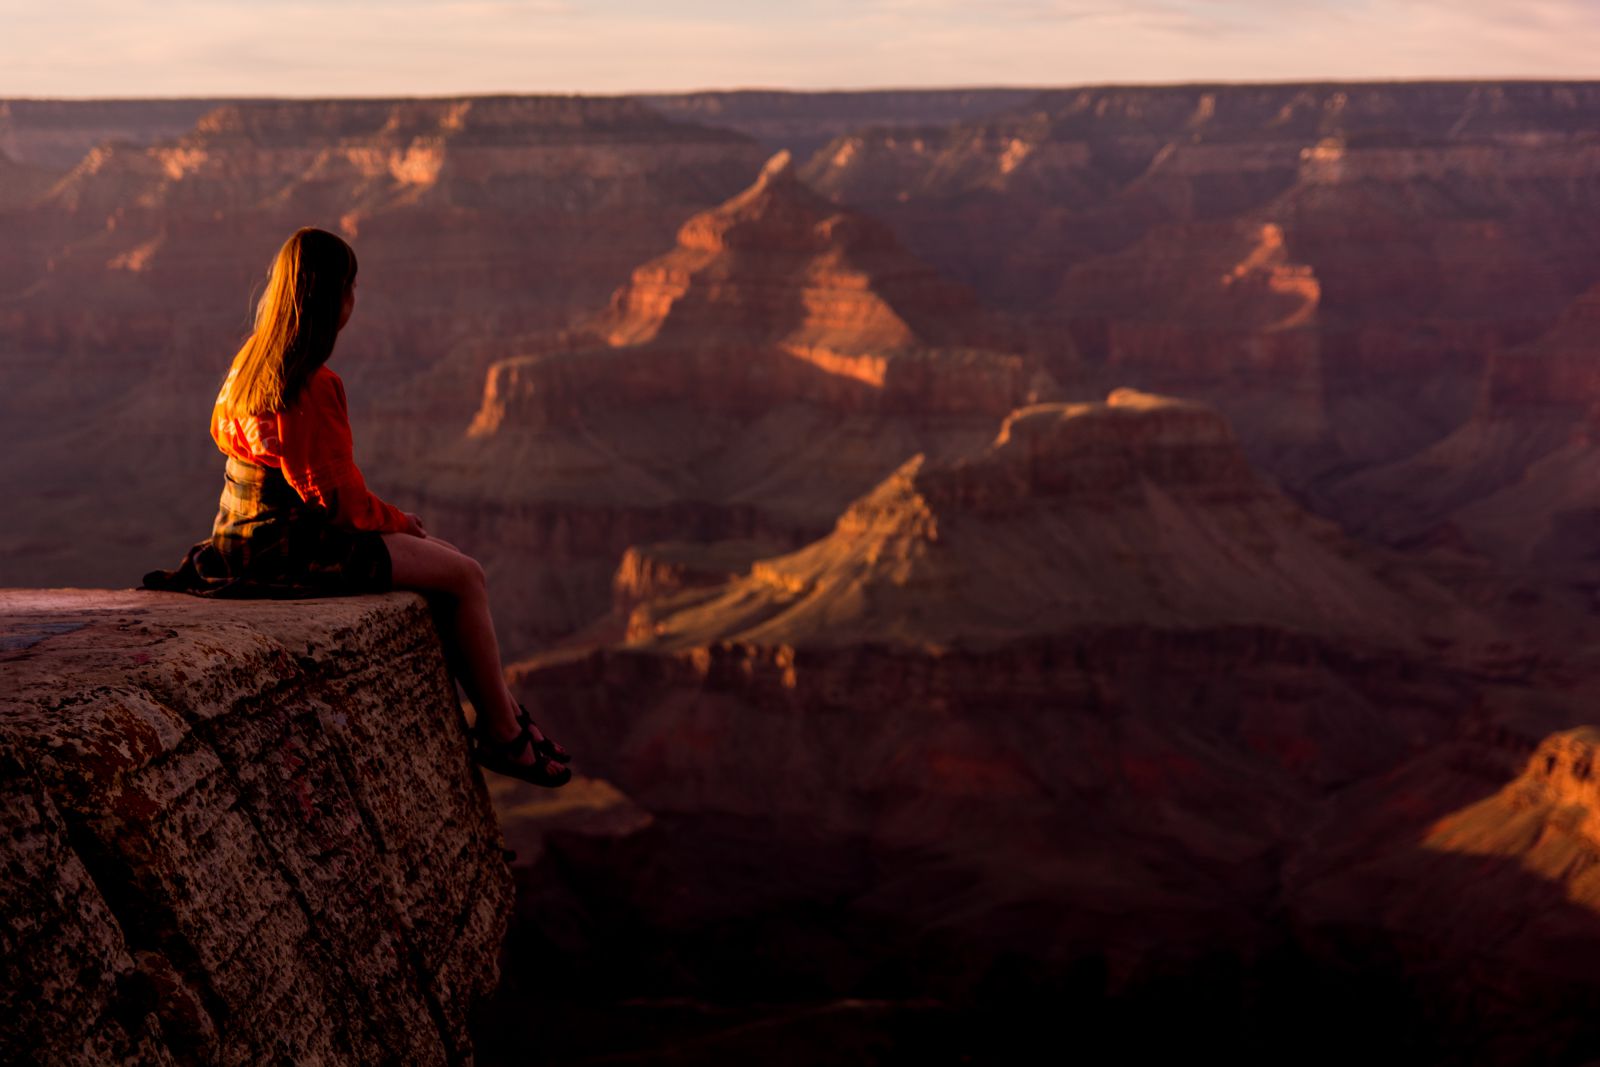 Mulher sentada em uma montanha olhando para o horizonte 